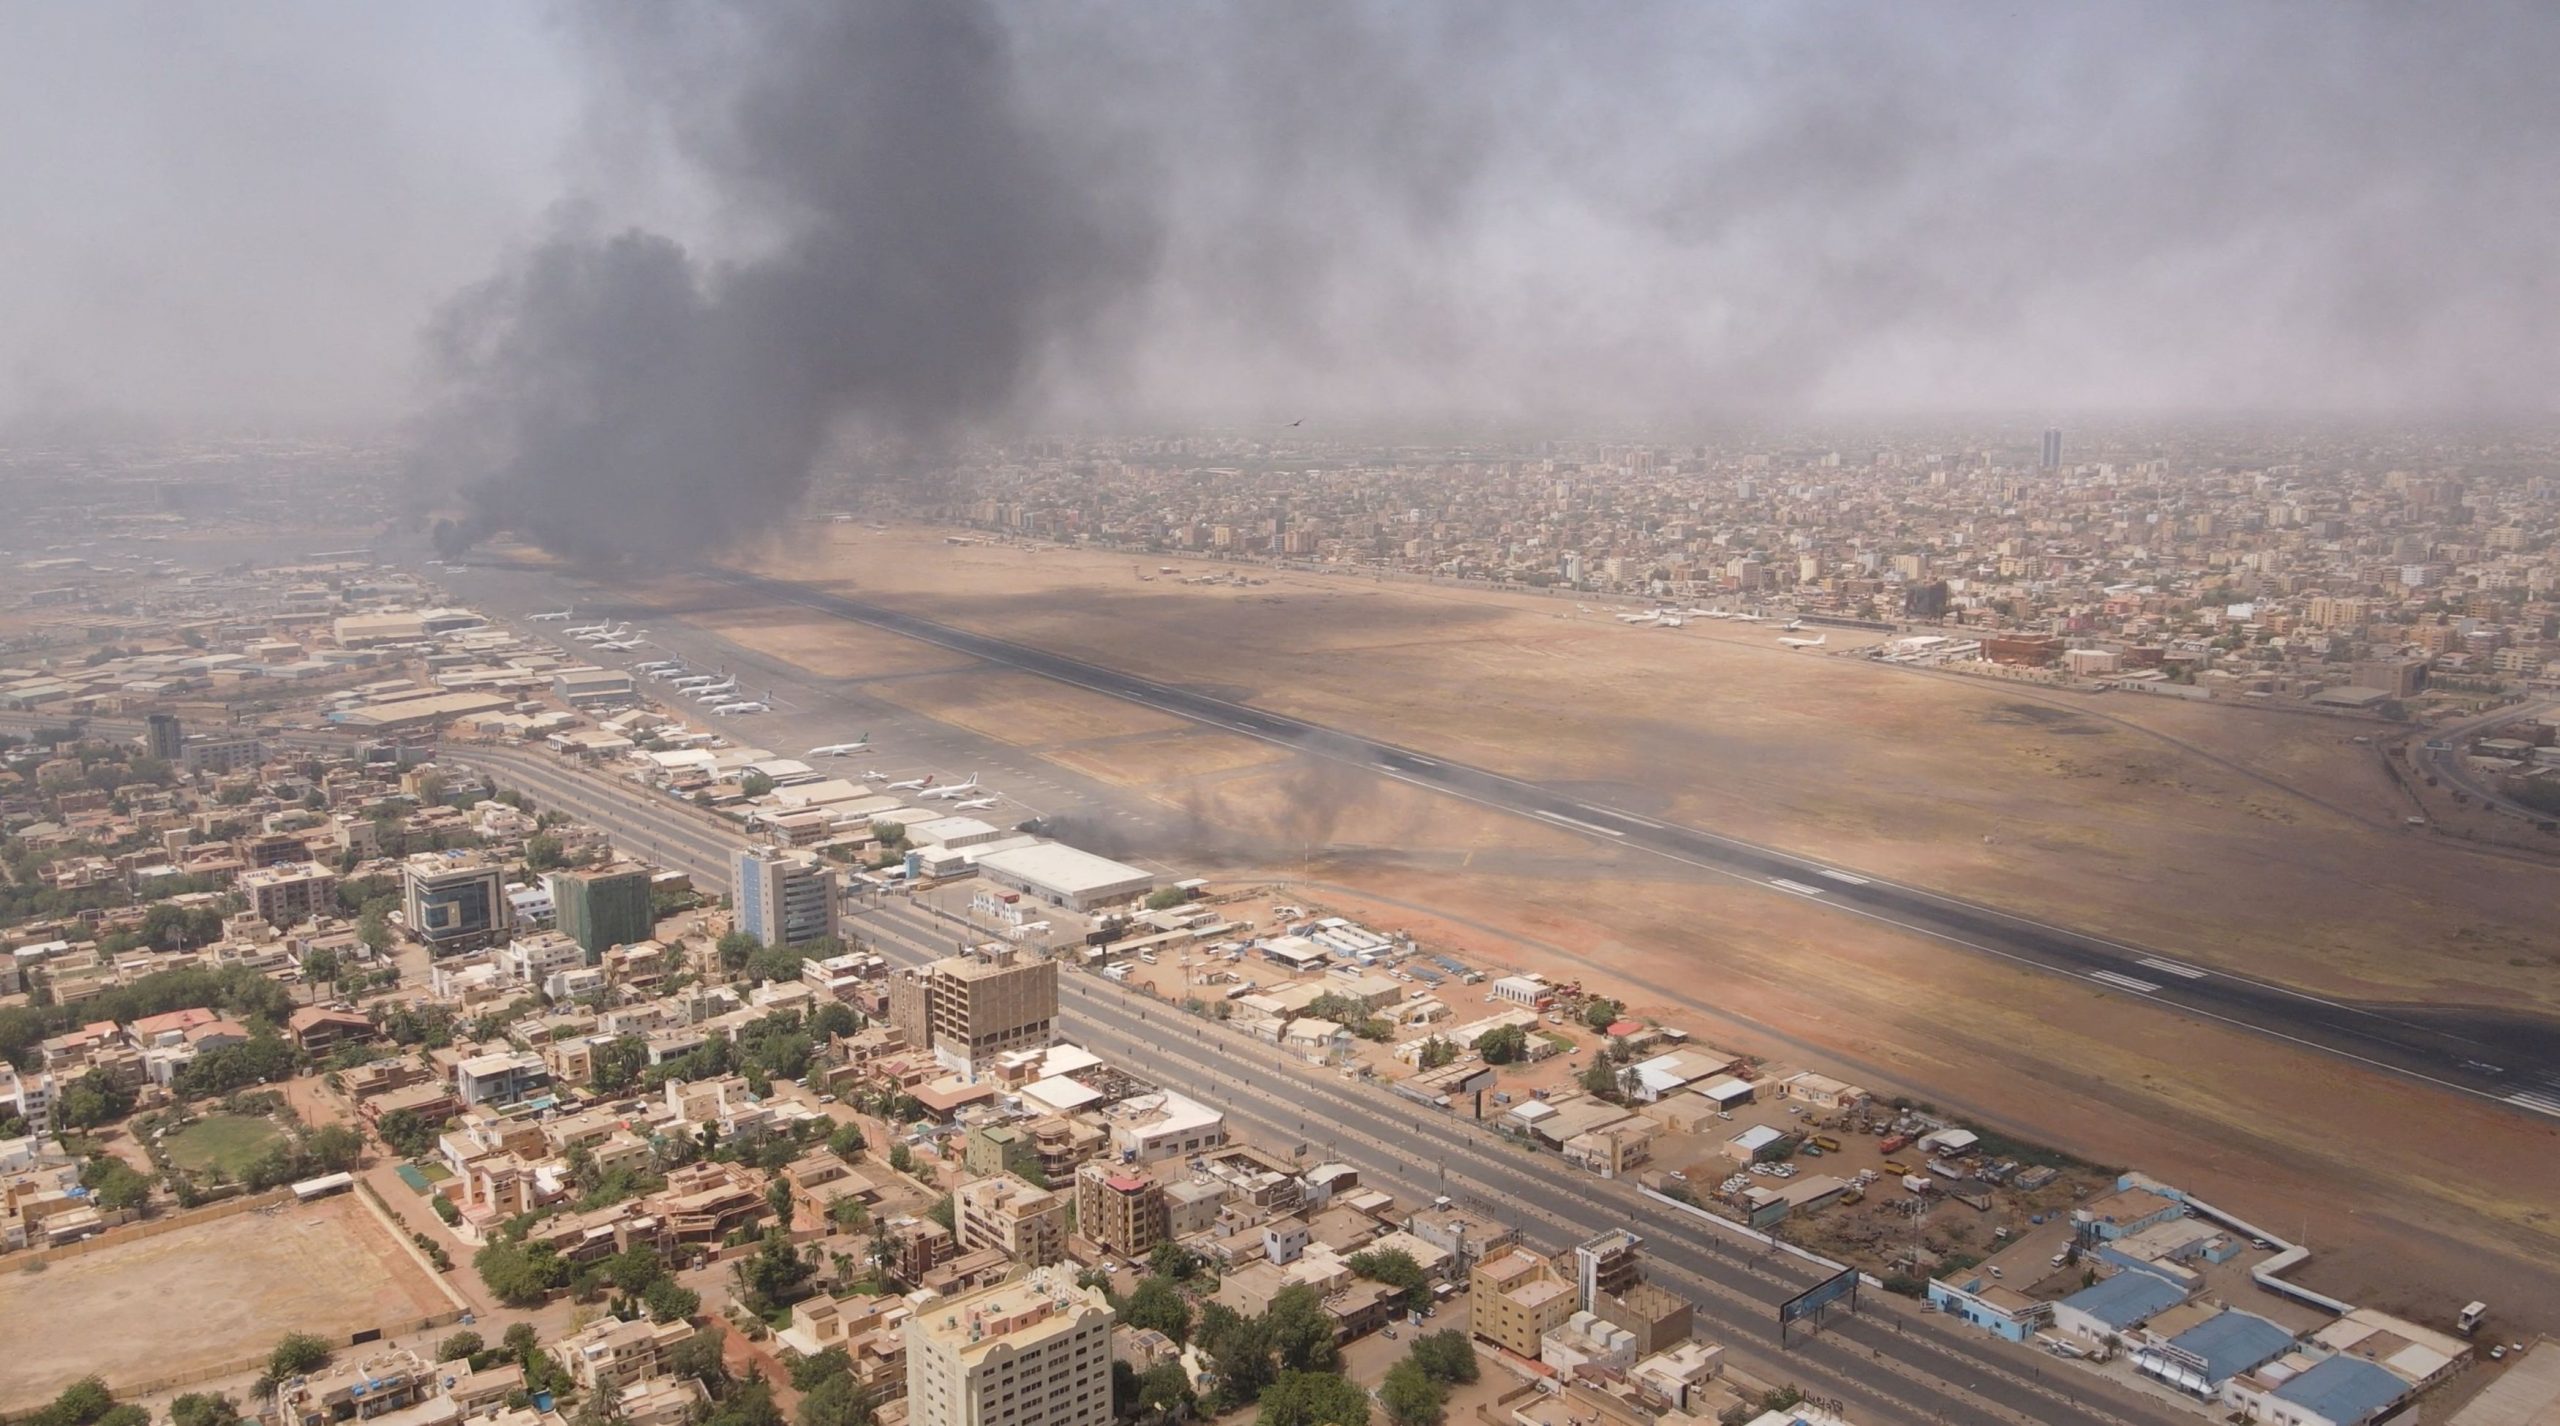 Σουδάν: Χτυπήθηκε το γαλλικό κομβόι που μετέφερε και Έλληνες πολίτες